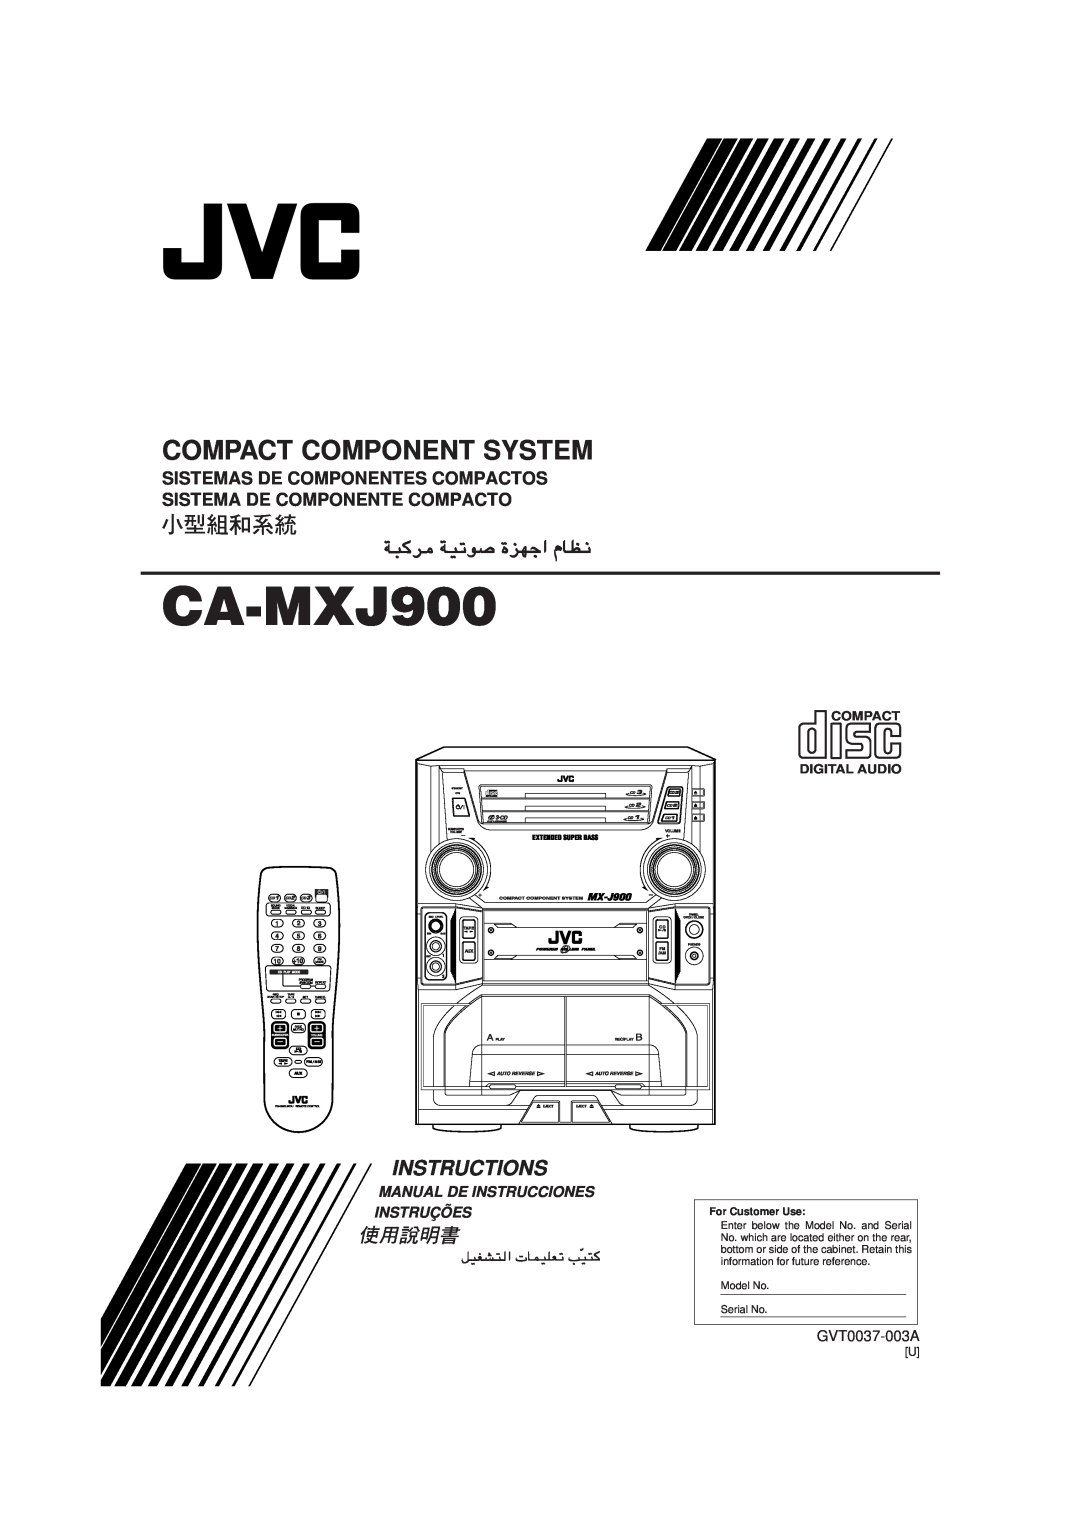 JVC CA-MXJ900 manual Compact Component System, Instructions, Manual De Instrucciones Instruções, GVT0037-003A 